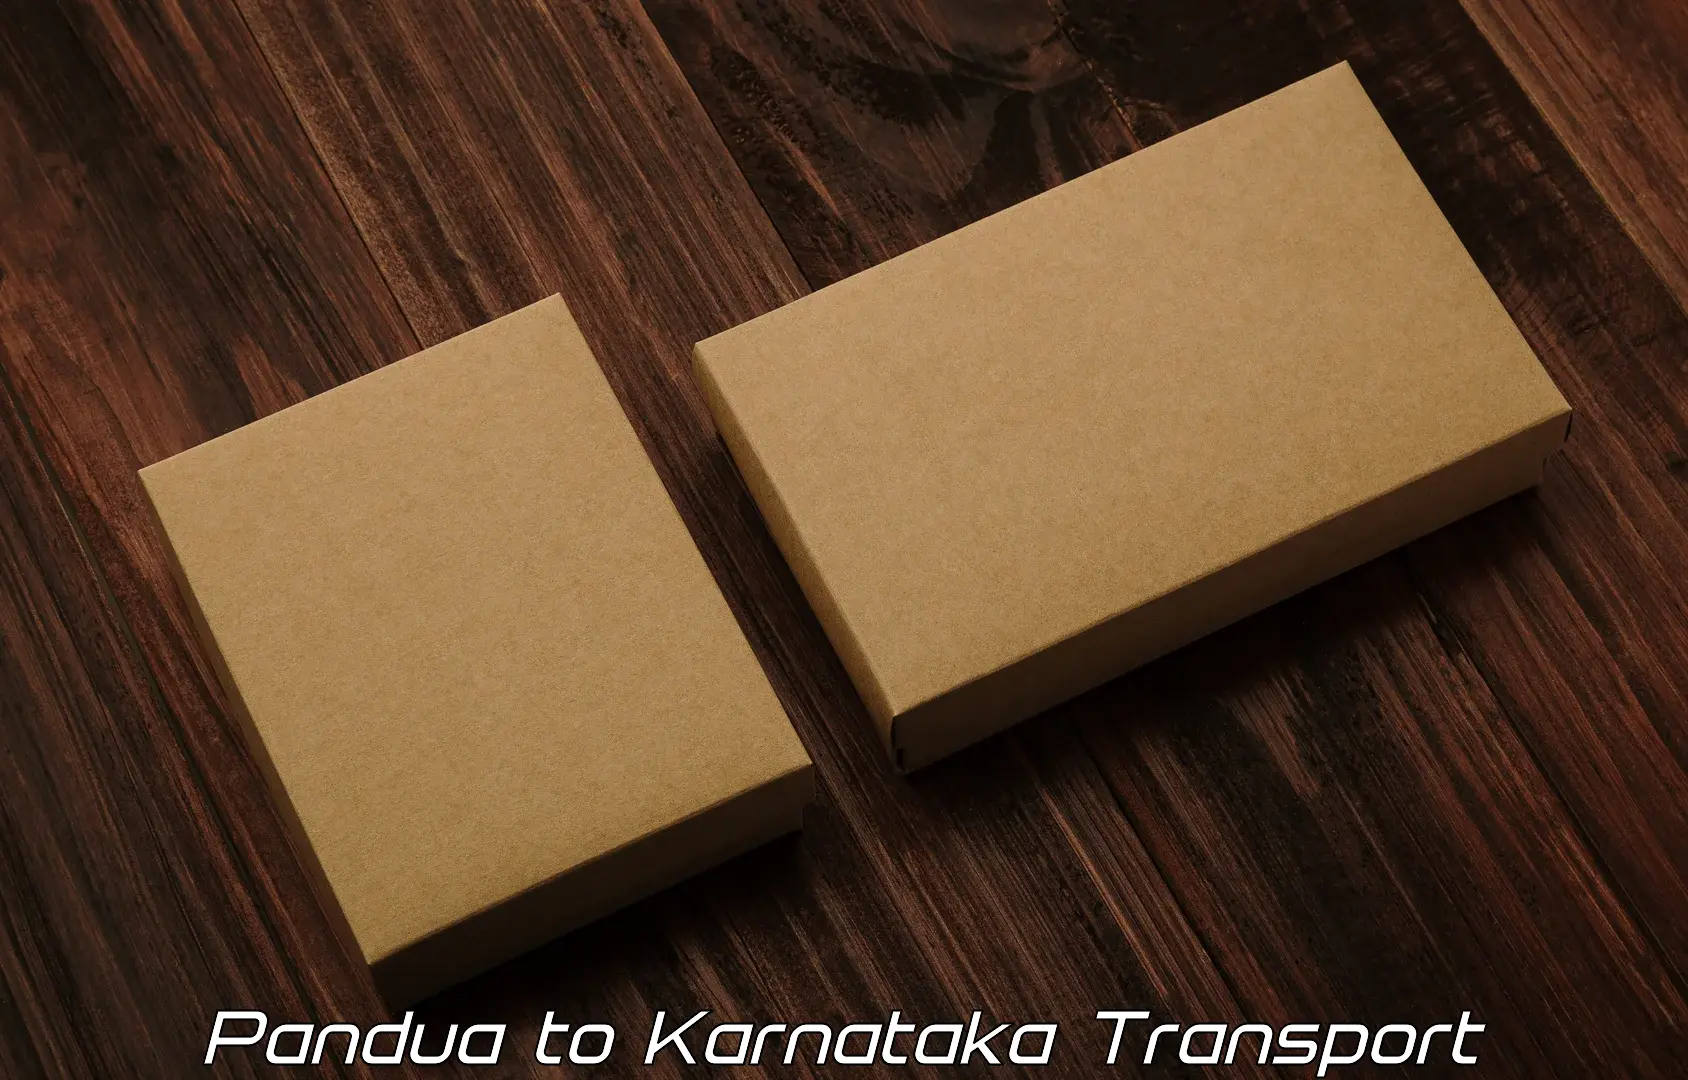 Road transport online services in Pandua to Chikkanayakanahalli